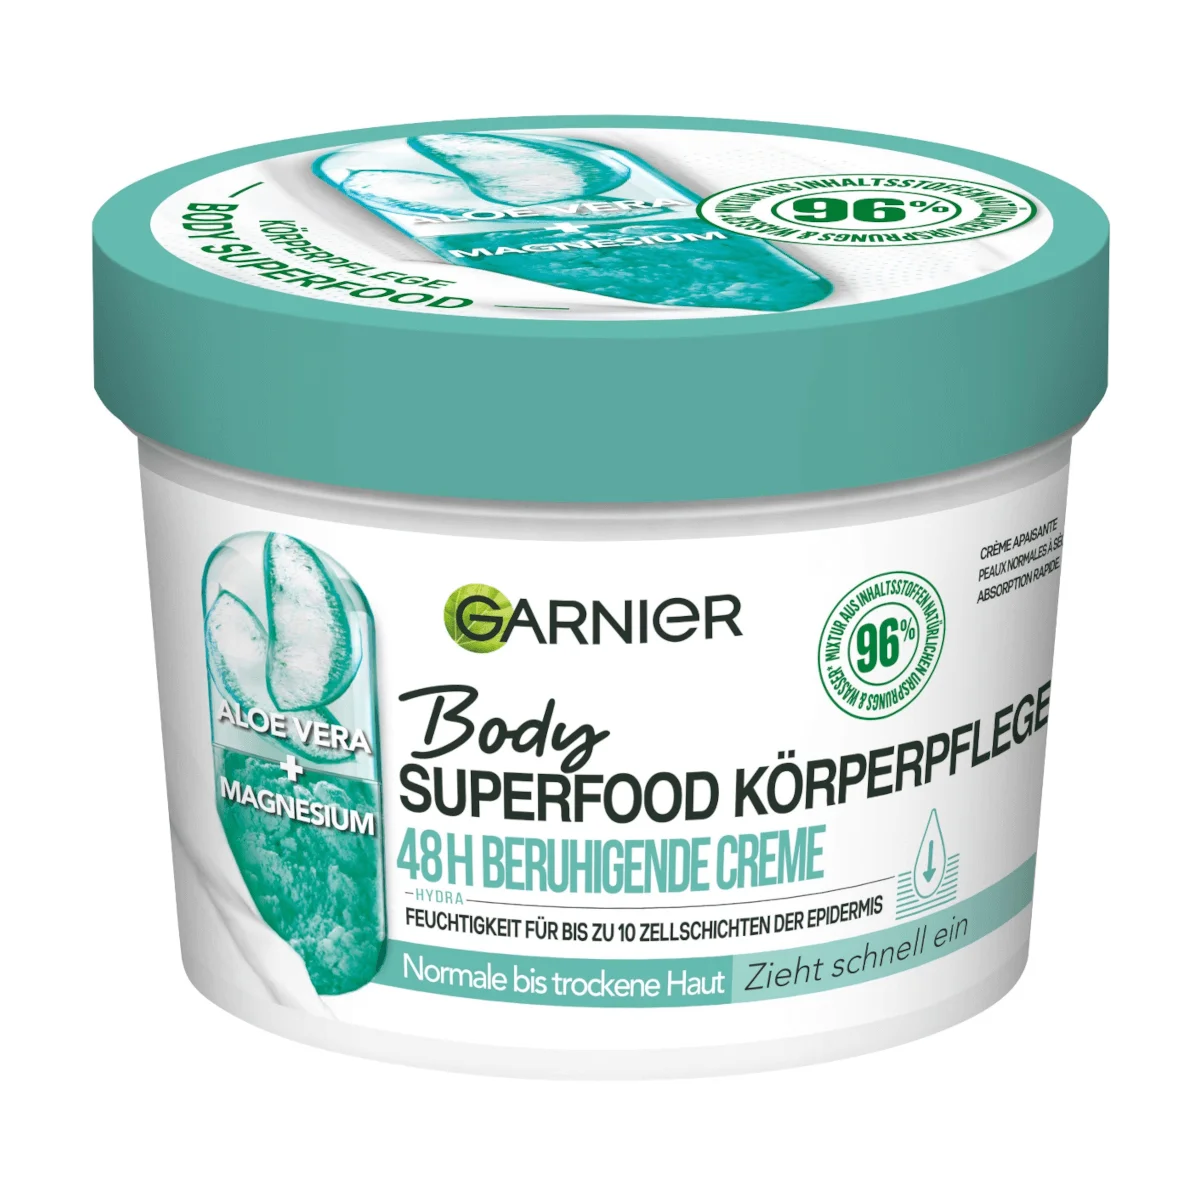 Garnier Body Superfood Körperpflege Aloe Vera, 380 ml